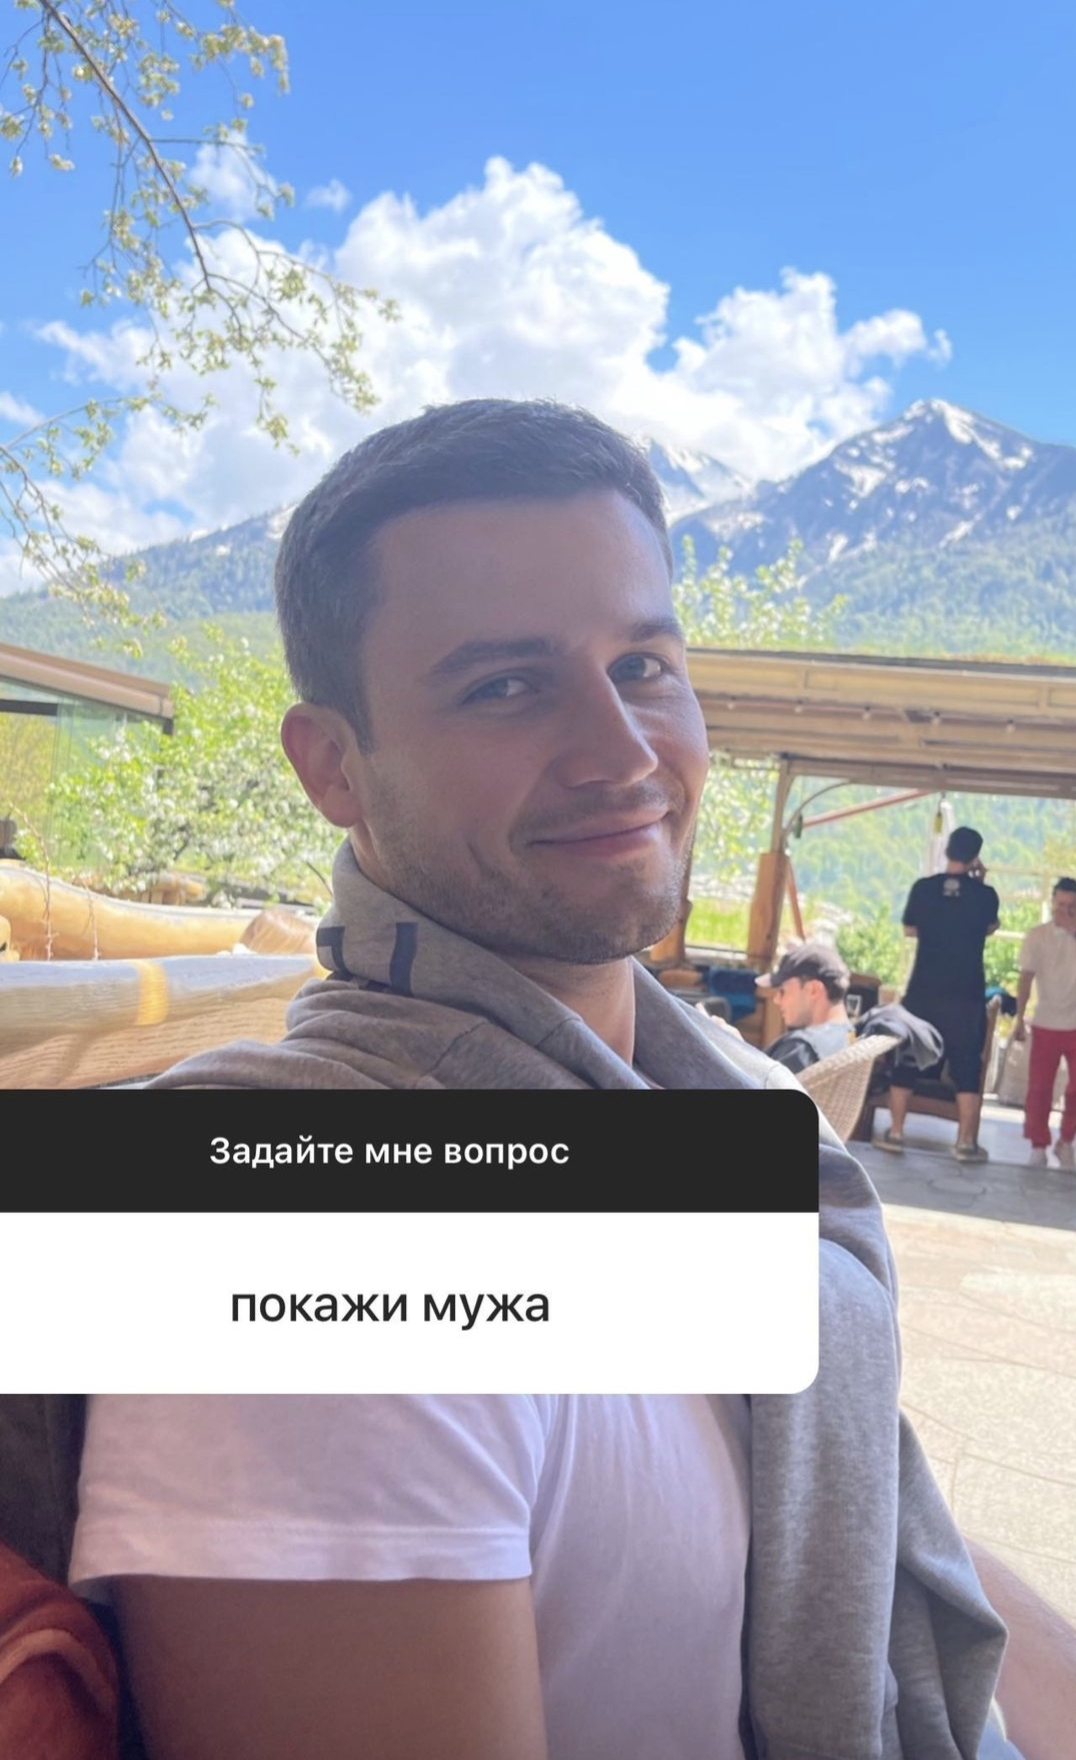 Леся Кафельникова опубликовала в Инстаграм редкий снимок мужа